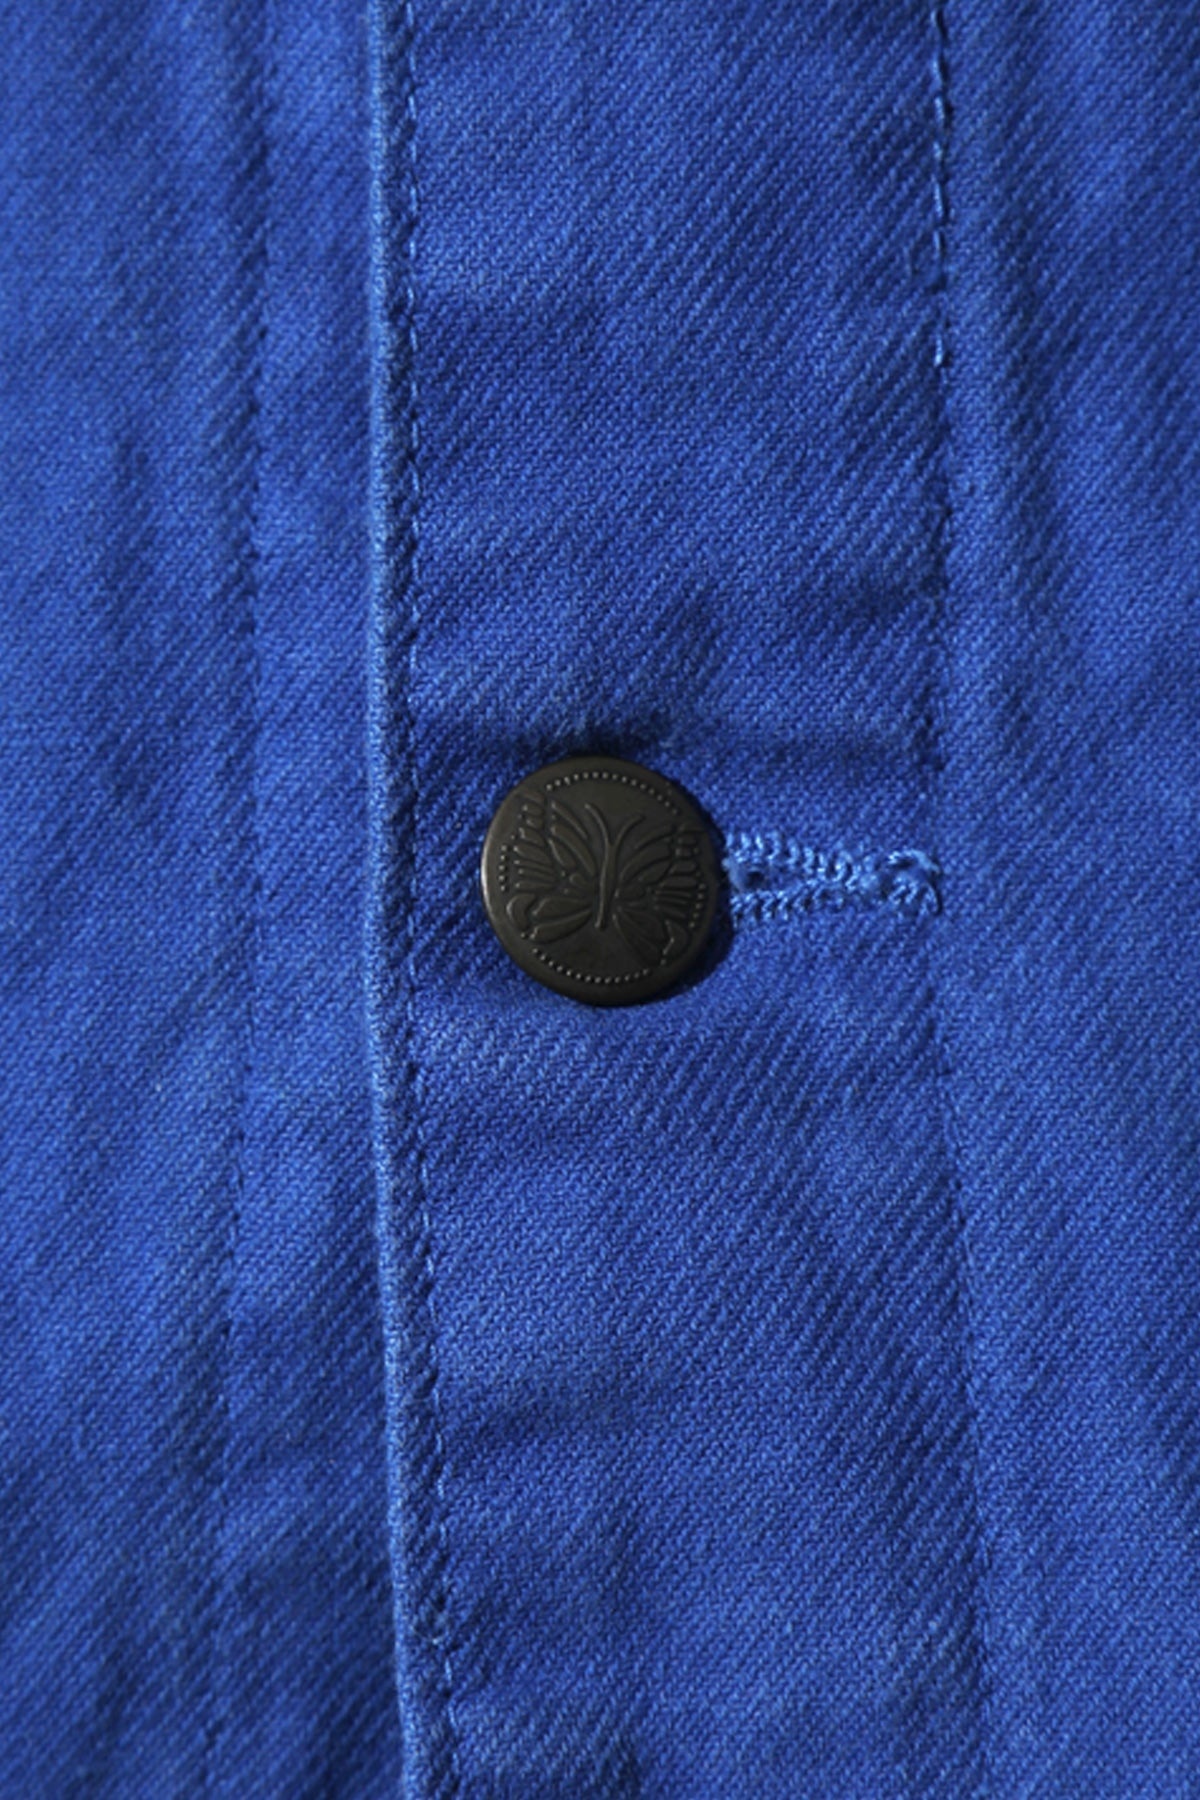 Euro Work Jacket/Covered Jacket - Black - 6